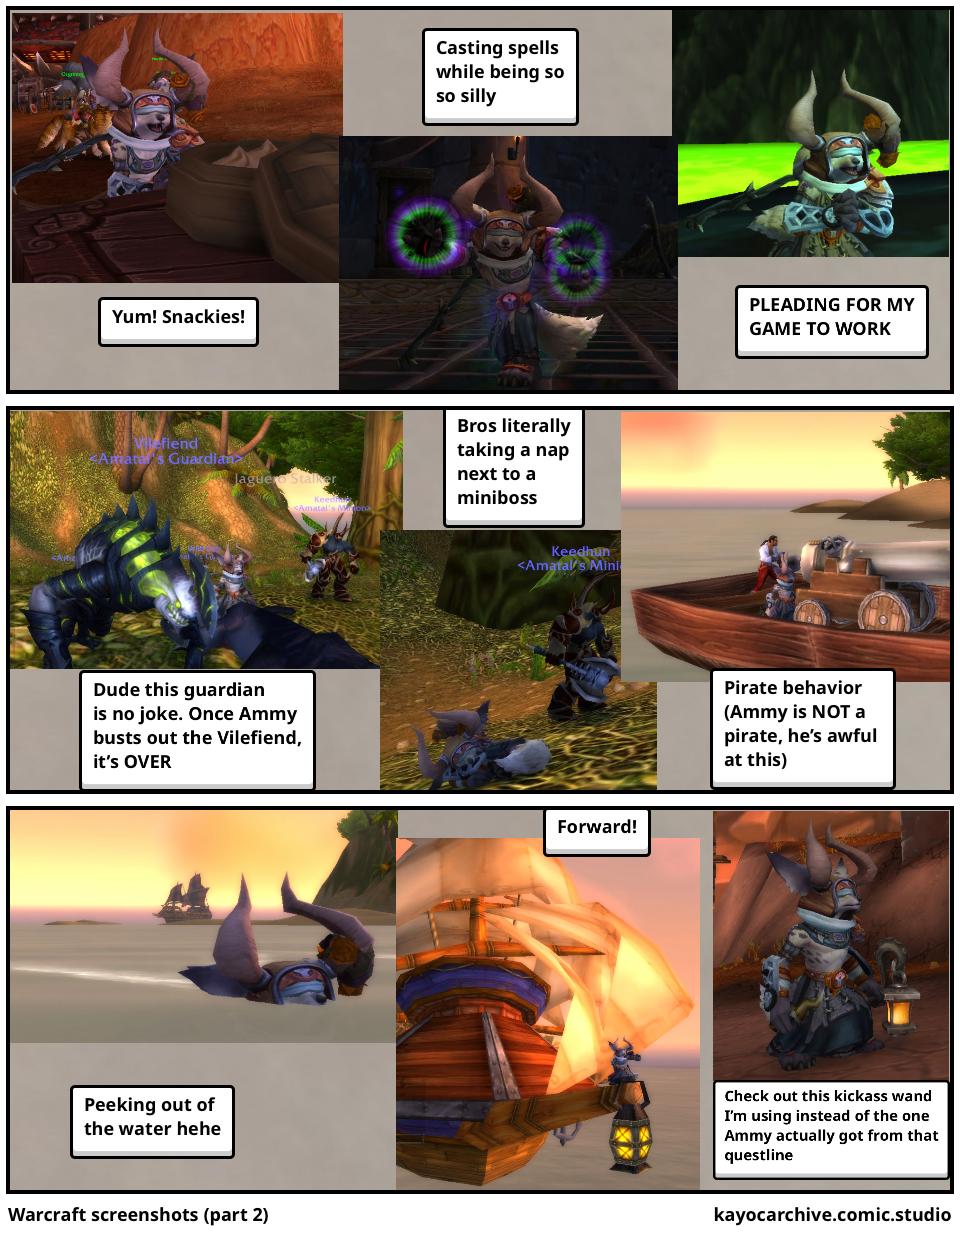 Warcraft screenshots (part 2)